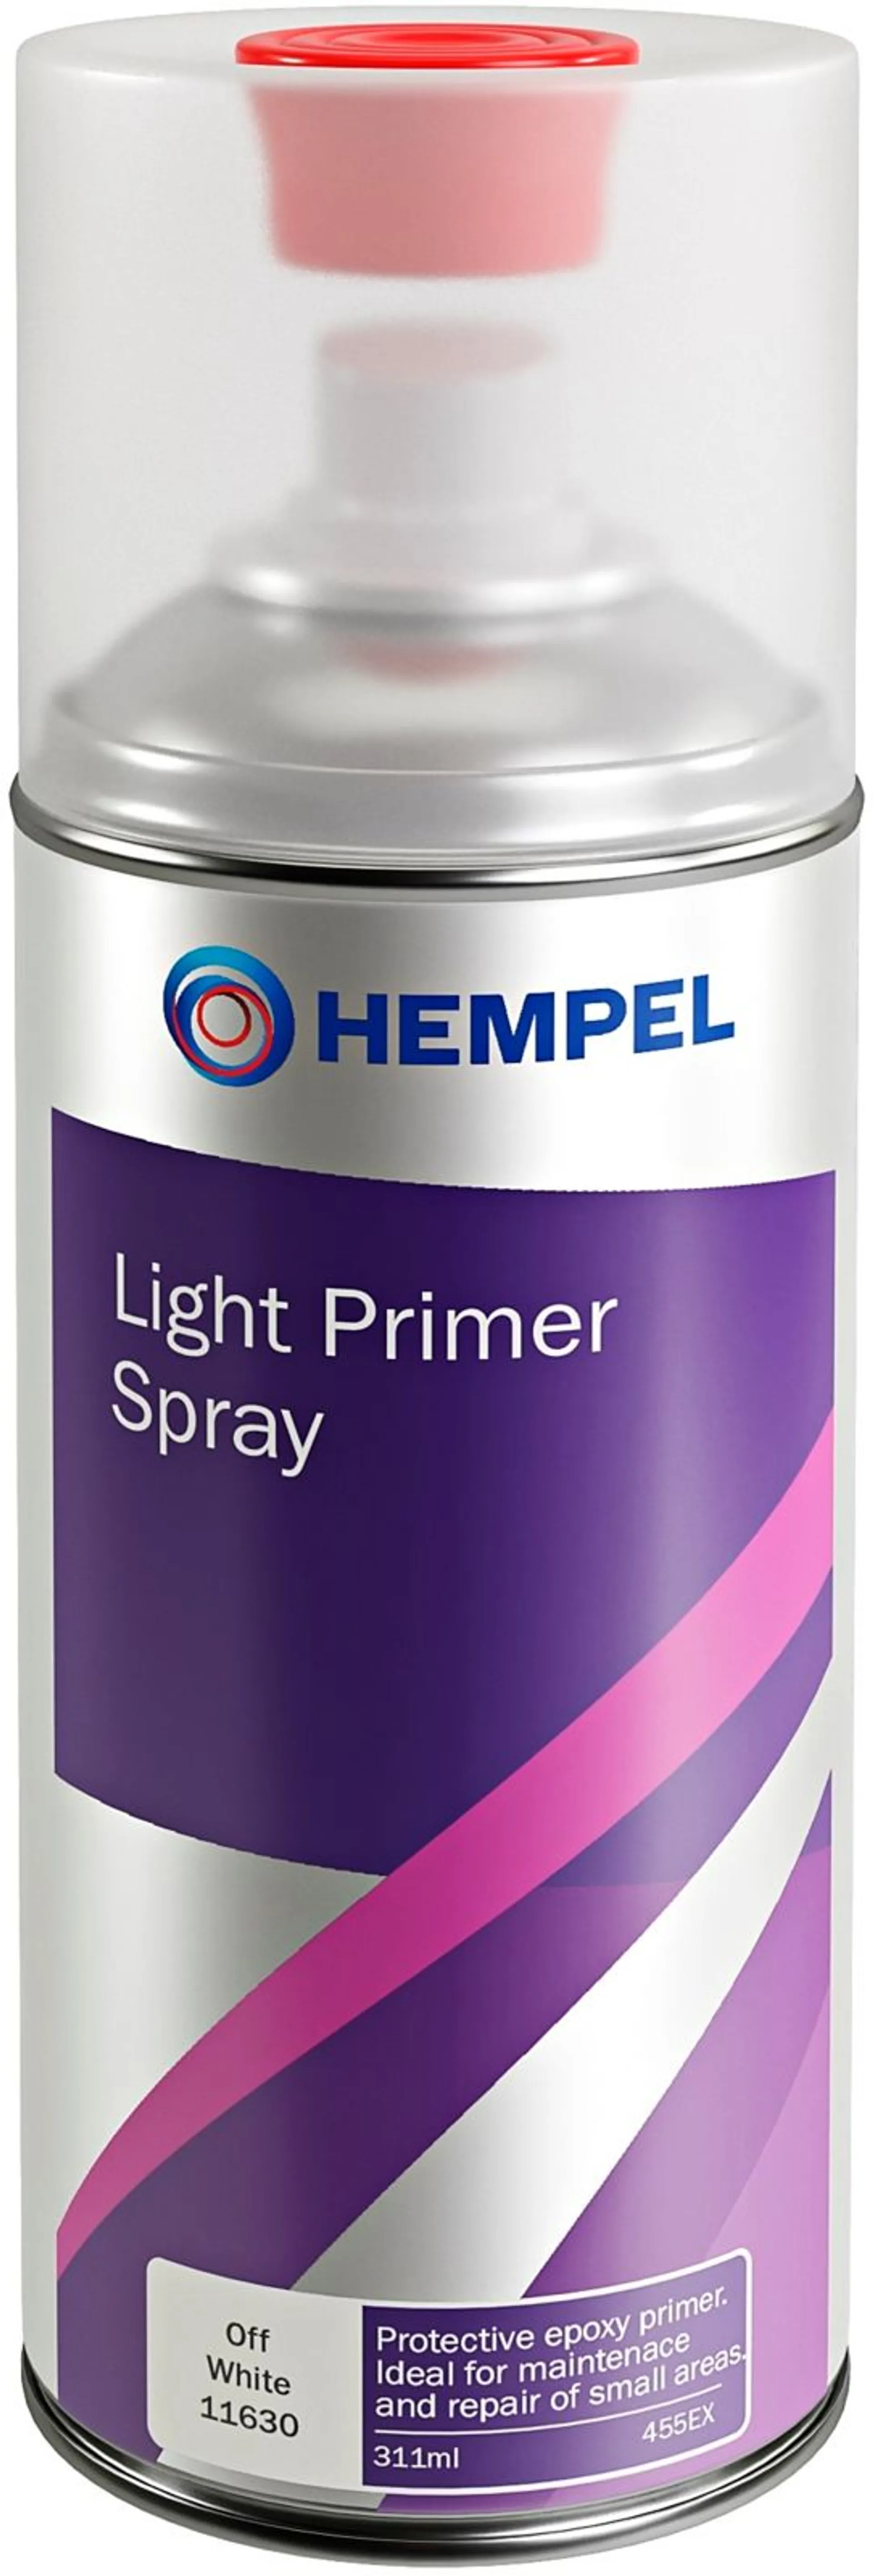 Hempel Light Primer Spray 0,31 l off white